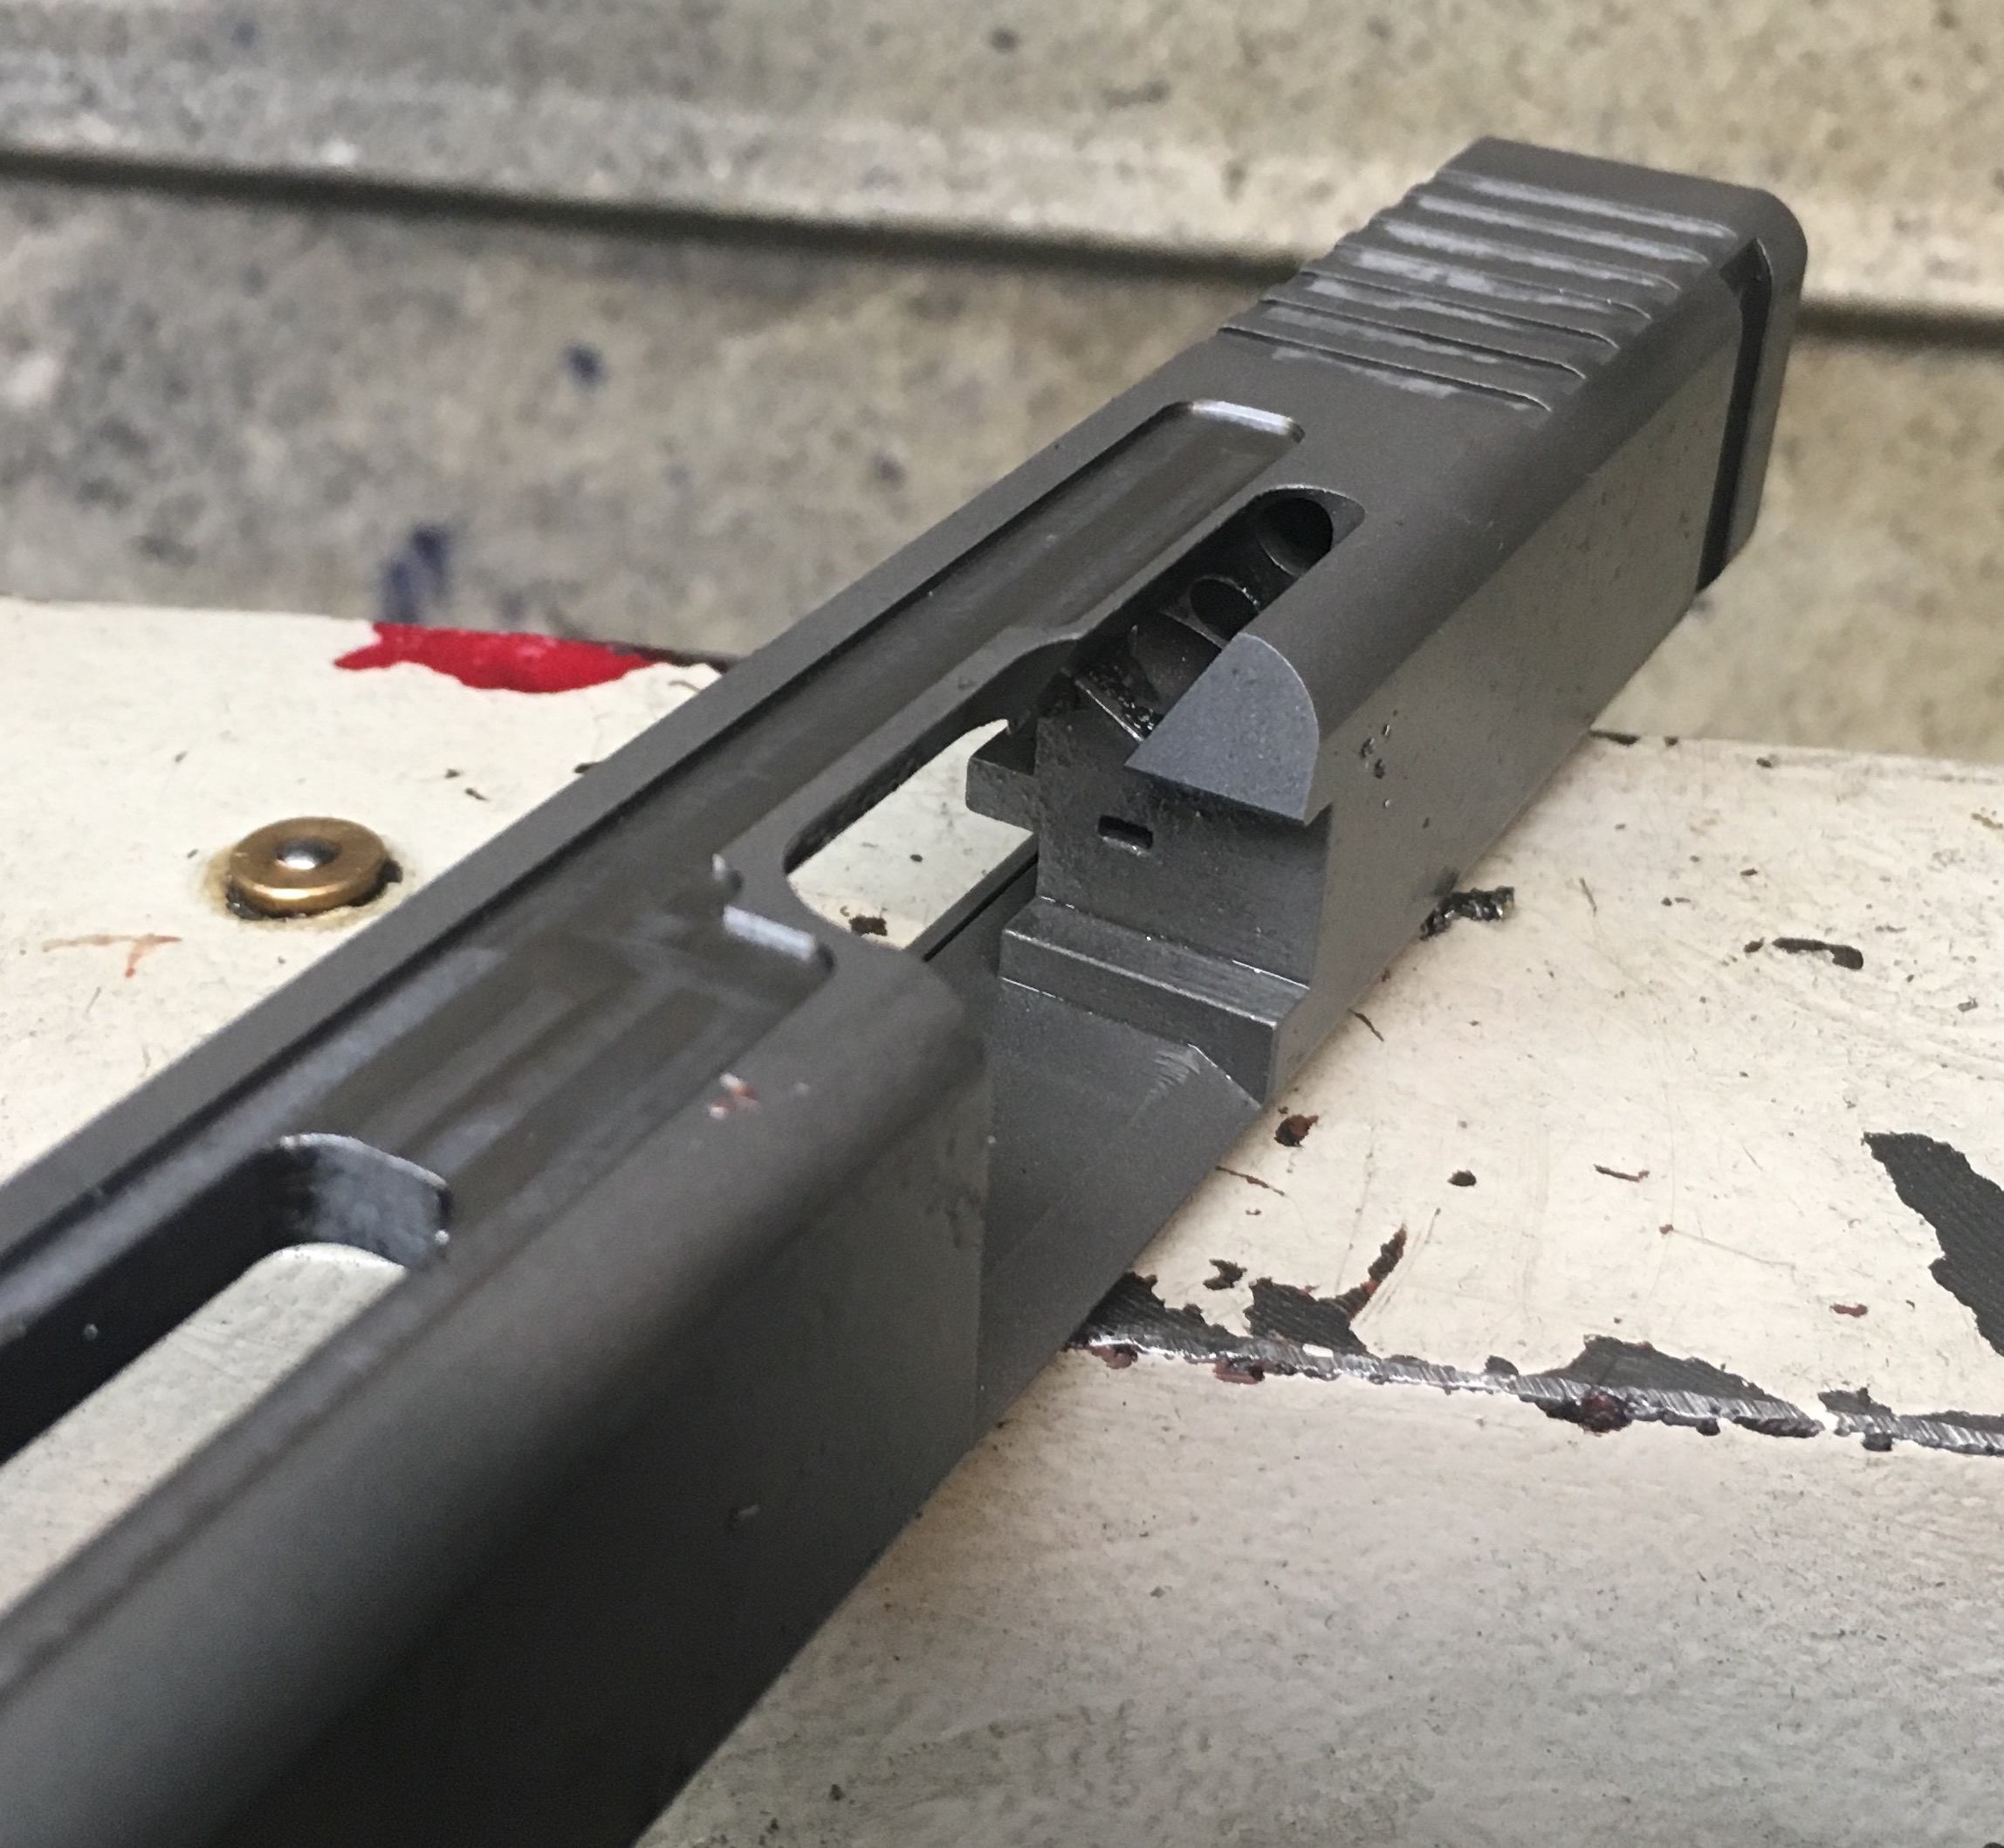 Custom Glock slide milling - rifleshooter.com. 